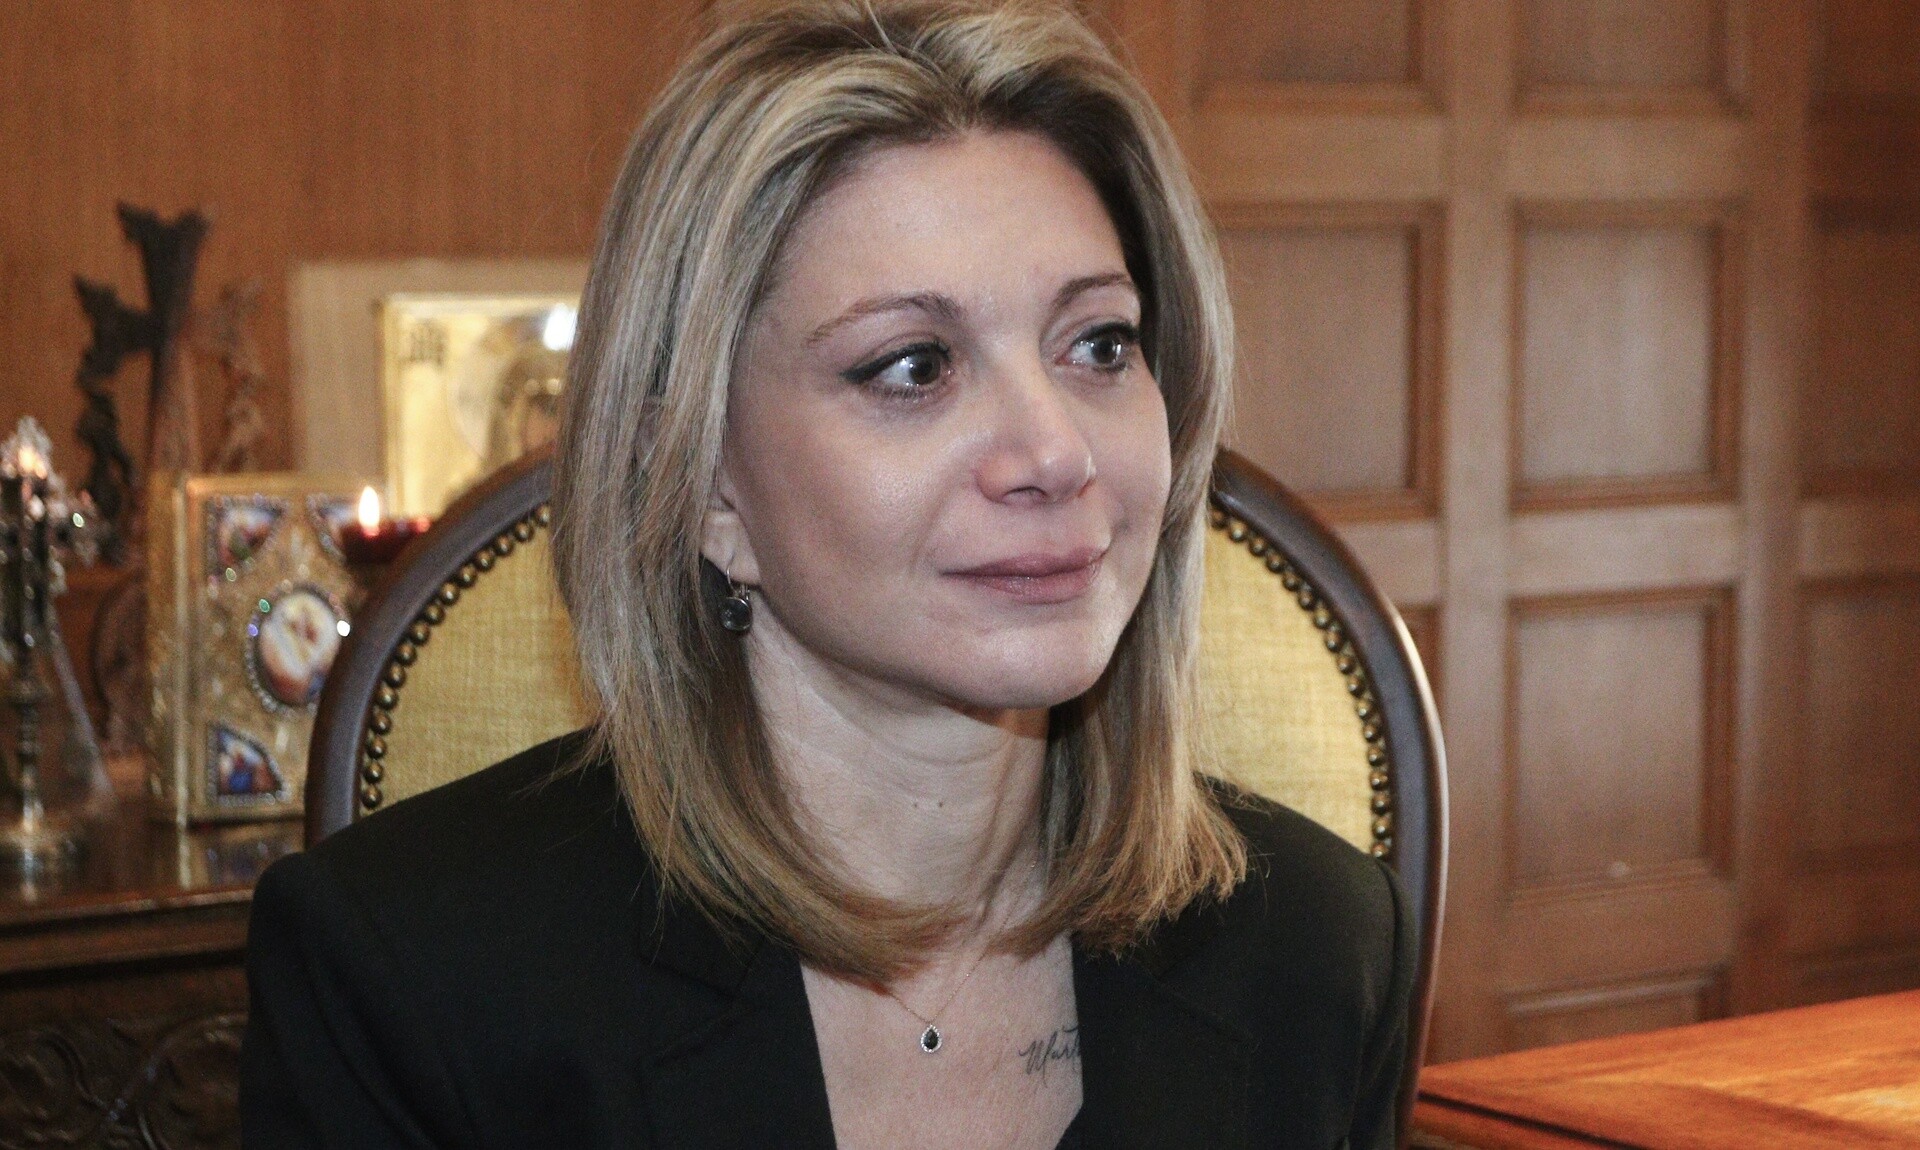 Μαρία Καρυστιανού: Δεν έχω καμία εμπιστοσύνη στην ελληνική δικαιοσύνη - Ντρέπομαι για τη Βουλή